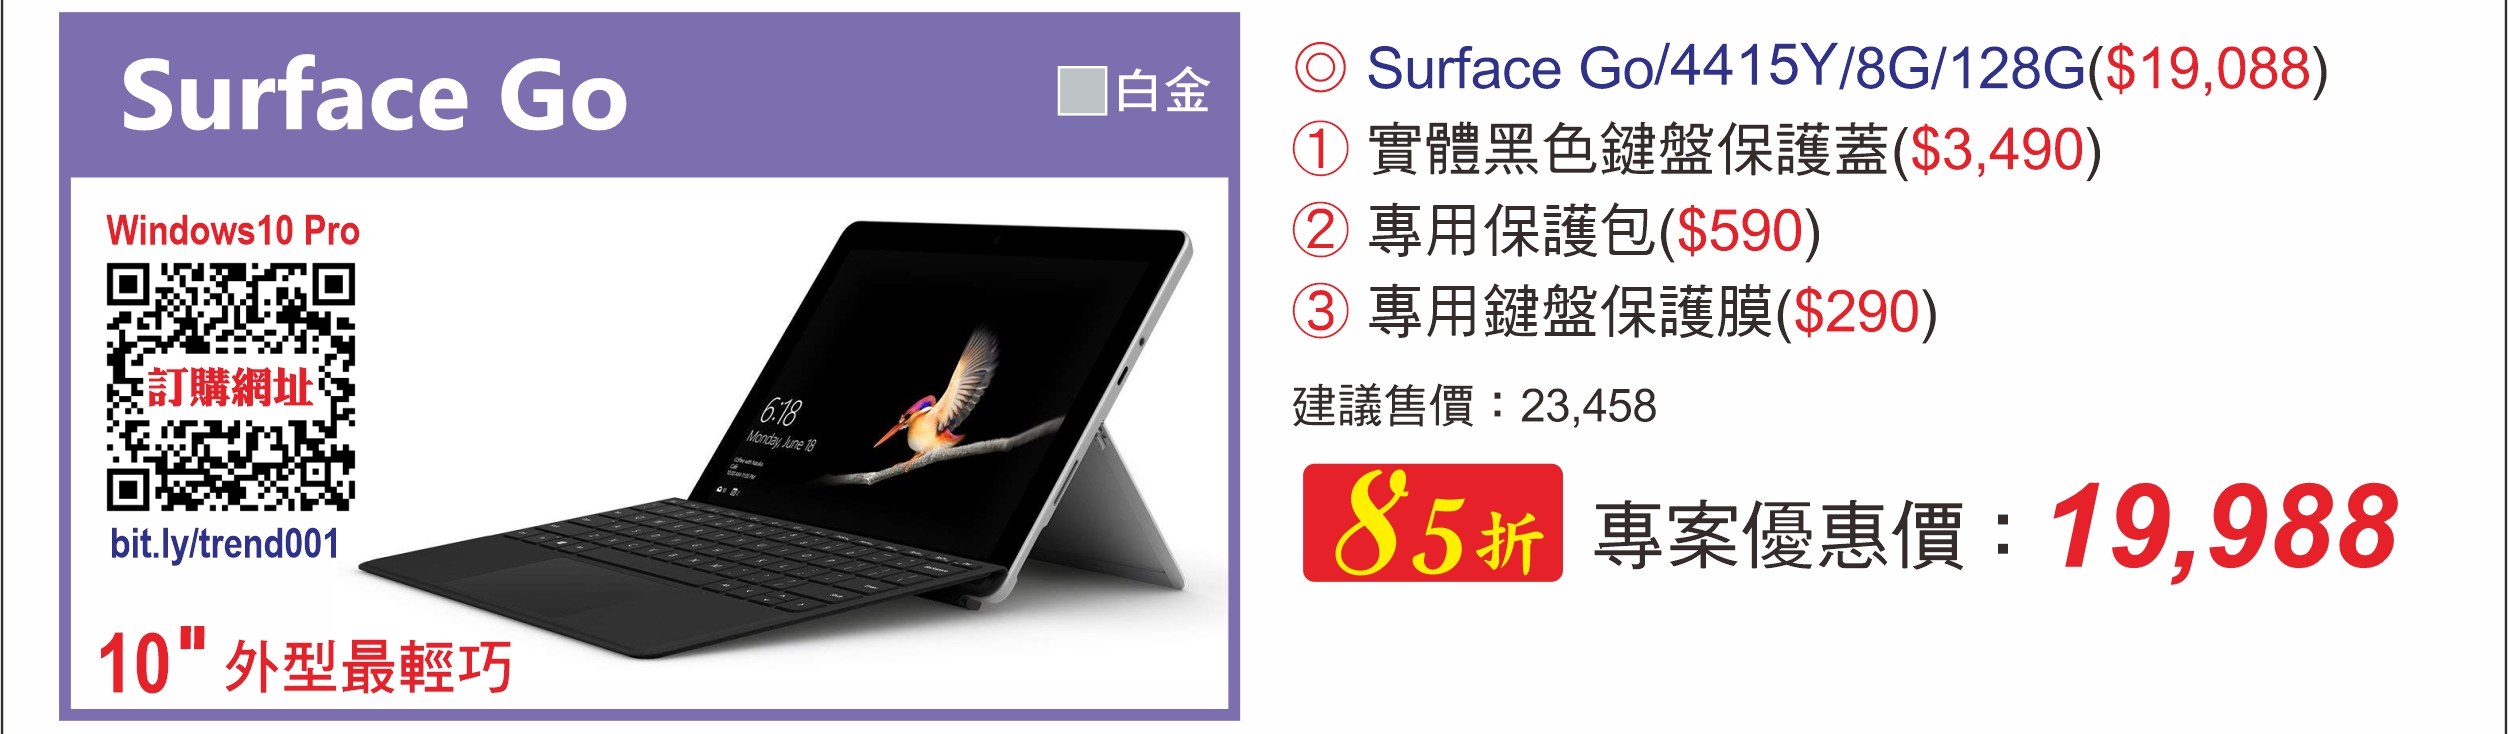 Surface Go 4415Y/8G/128G 白金(趨勢員購)